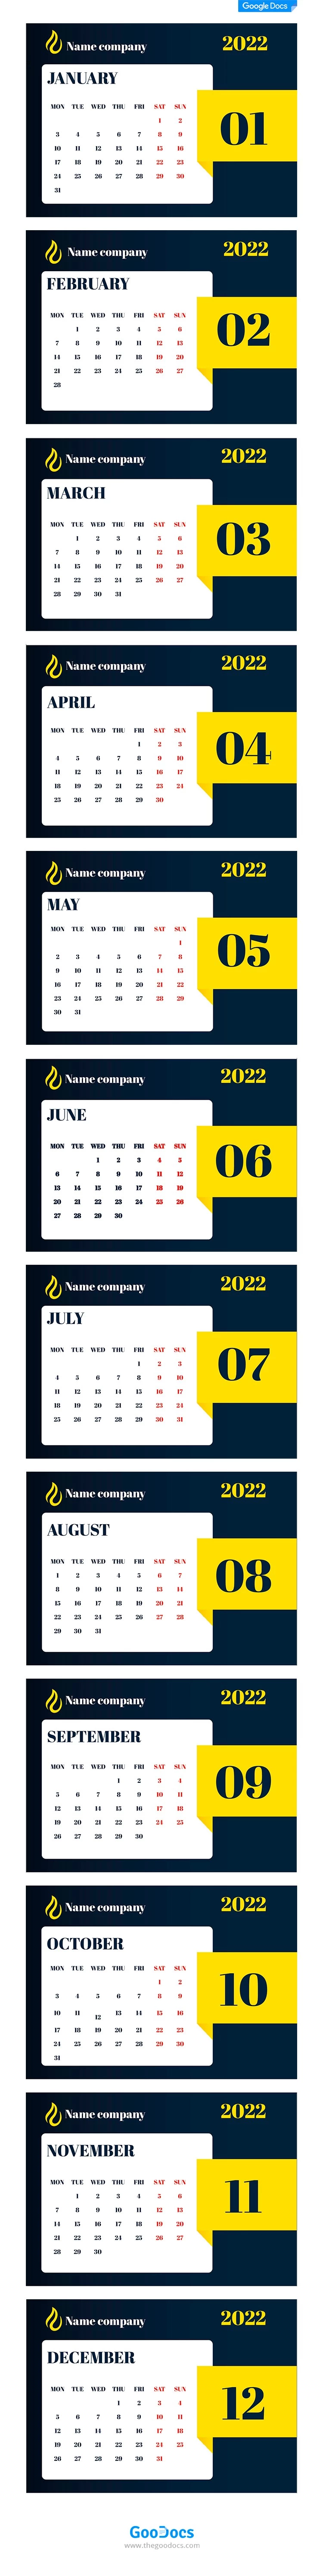 Calendario empresarial sofisticado. - free Google Docs Template - 10062056